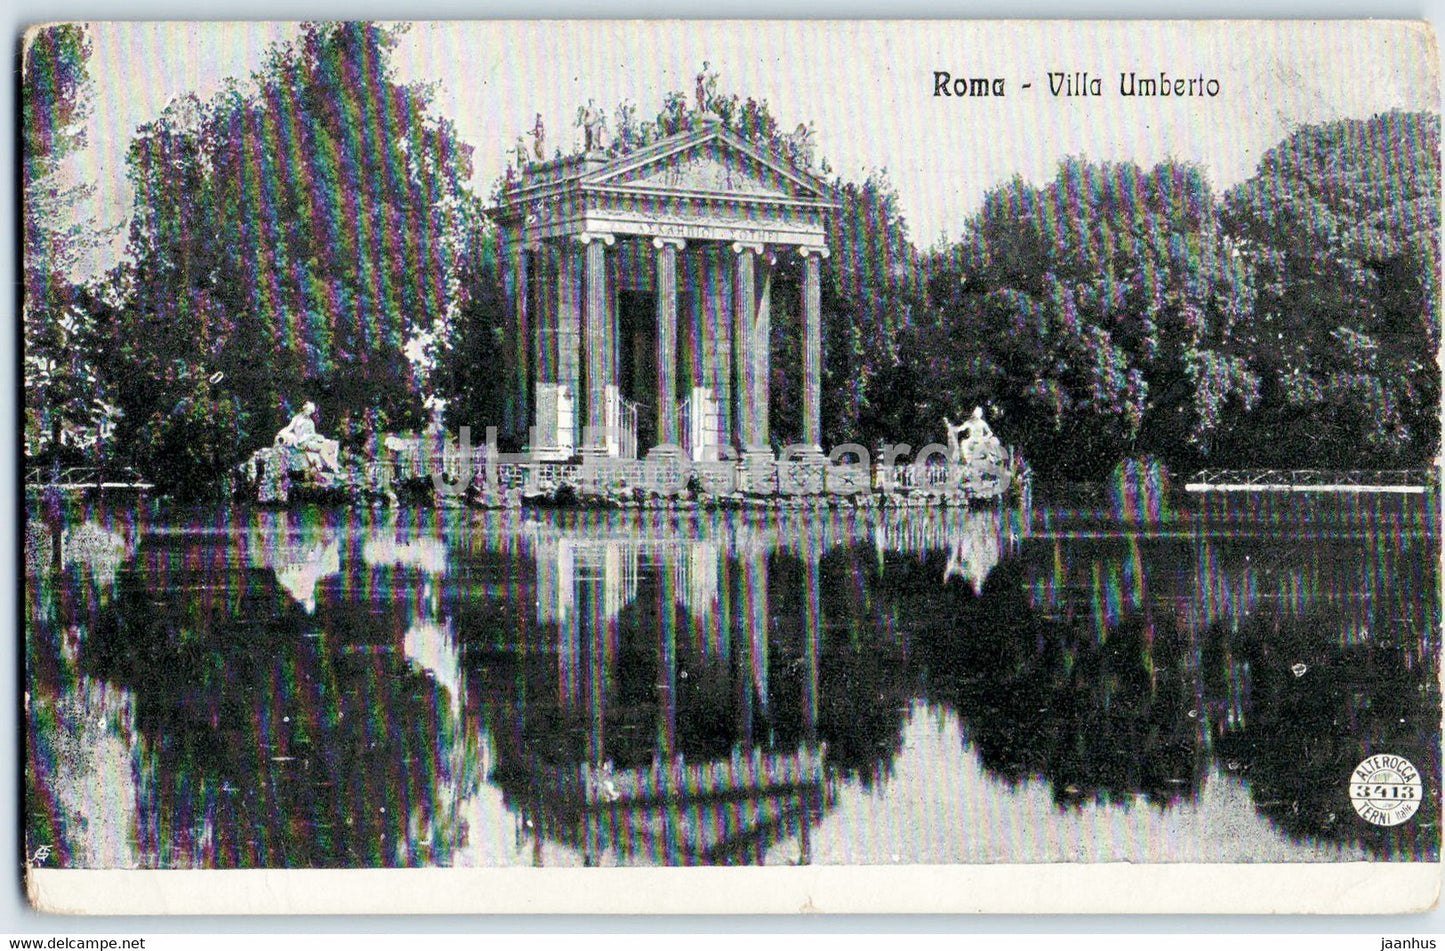 Roma - Rome - Villa Umberto - old postcard - Italy - unused - JH Postcards